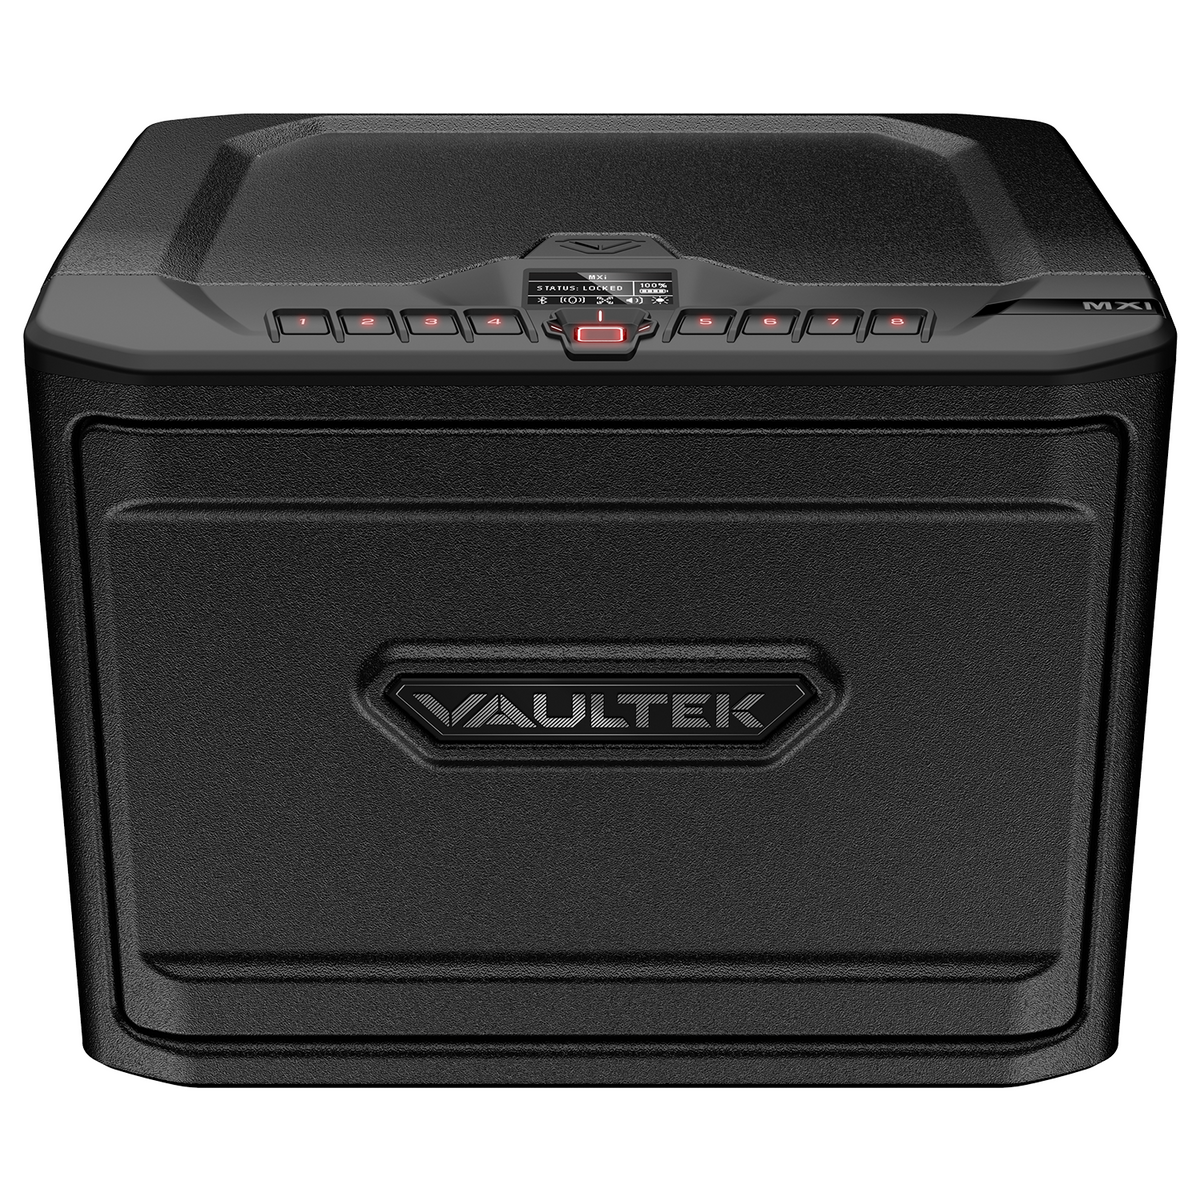 Vaultek- MX High Capacity Rugged Modular Biometric and Bluetooth Gun Safe